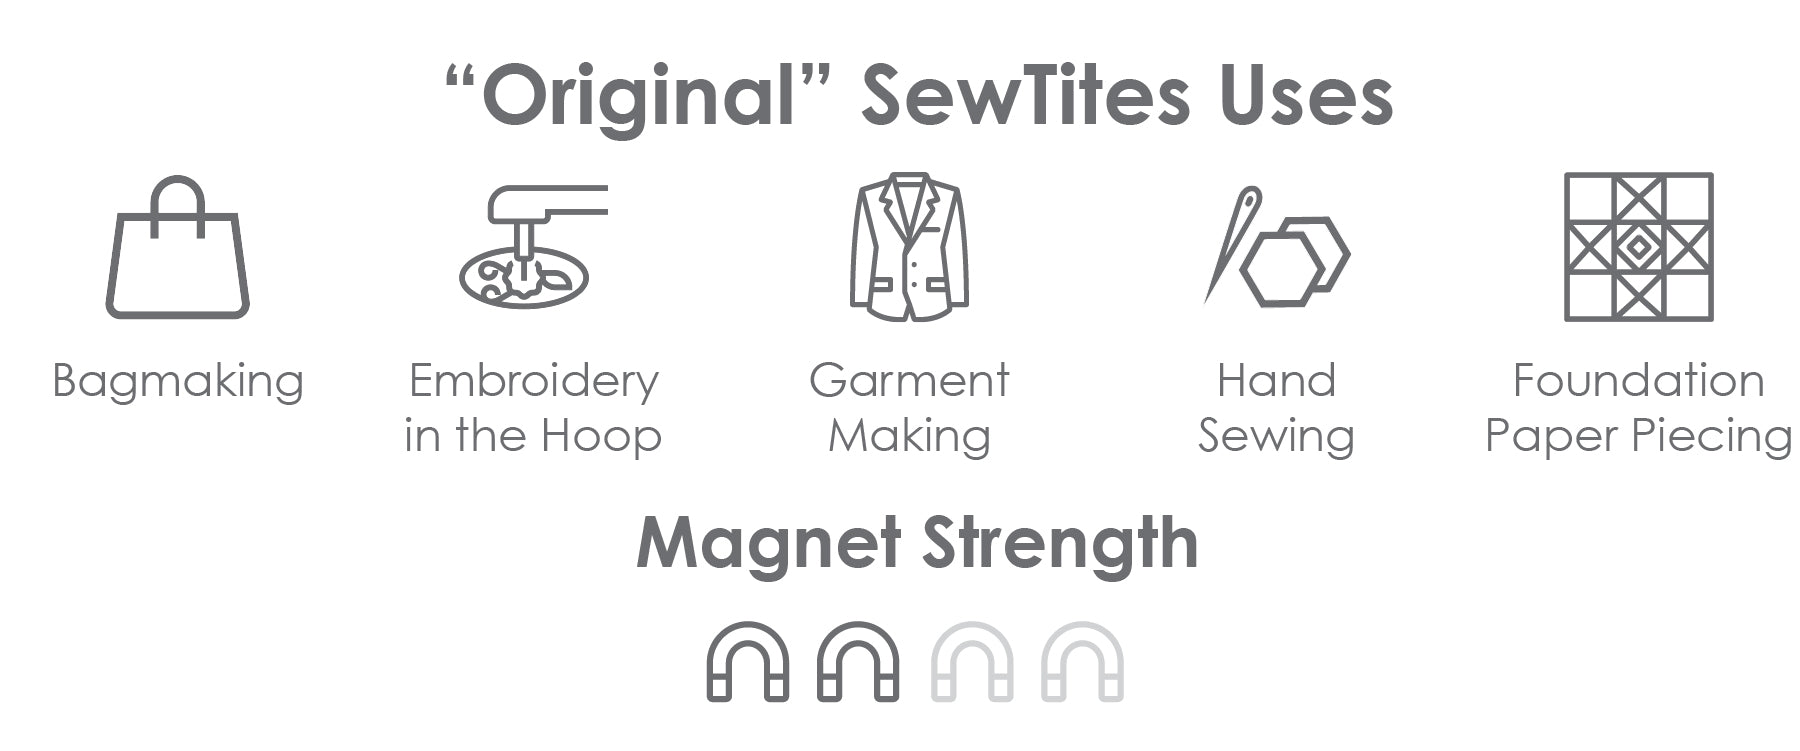 SewTites "Original" Uses & Magnet Strength